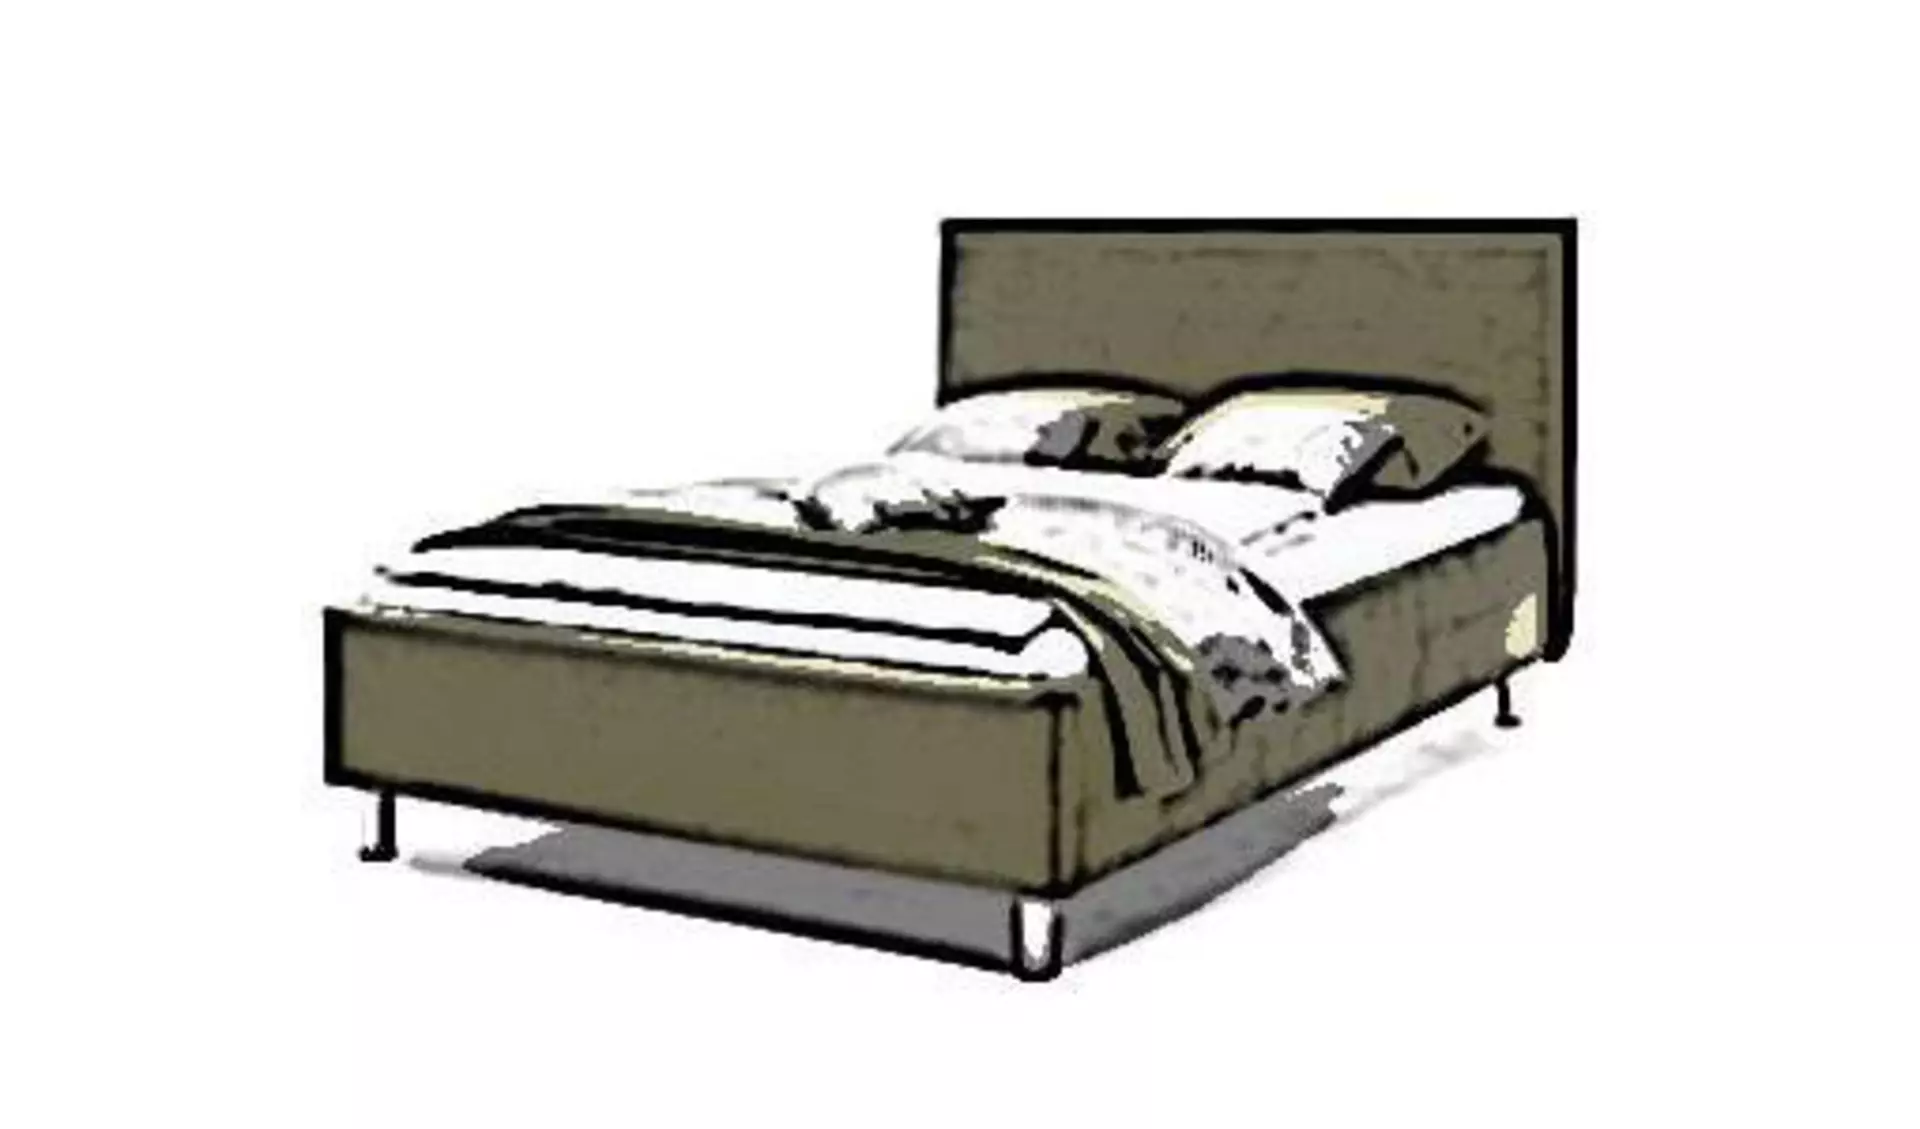 Ein stilisiertes bezogenes Bett als Sinnbild für die in der Kategorie enthaltenen Bettentypen wie Boxspringbett, Polsterbett und Futonbett.